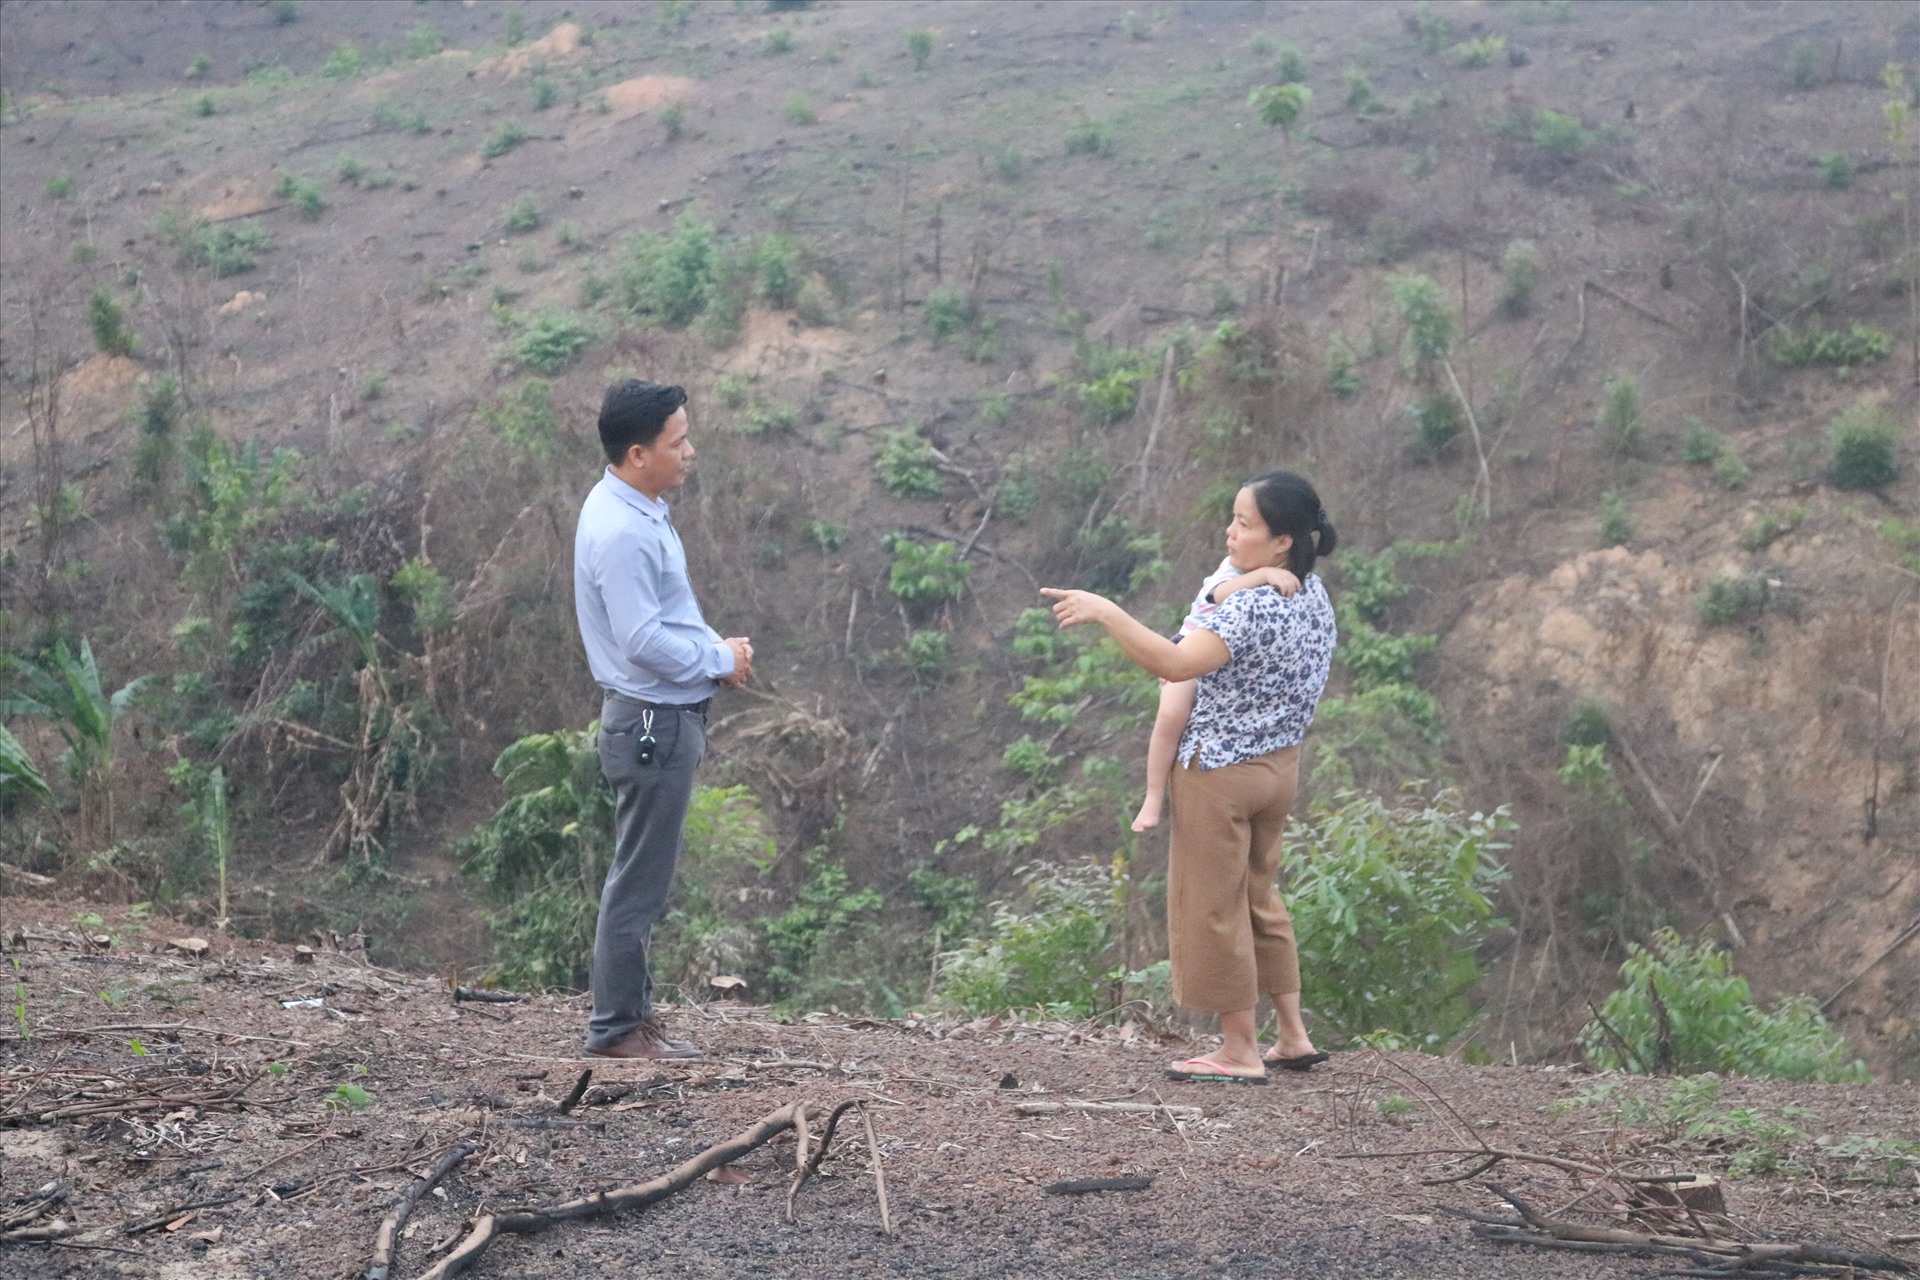 Con gái bà Mai (bên phải) bức xúc kể lại với PV khi khu đất của gia đình bổng dưng được người khác đứng tên trên sổ đỏ. Ảnh: HC